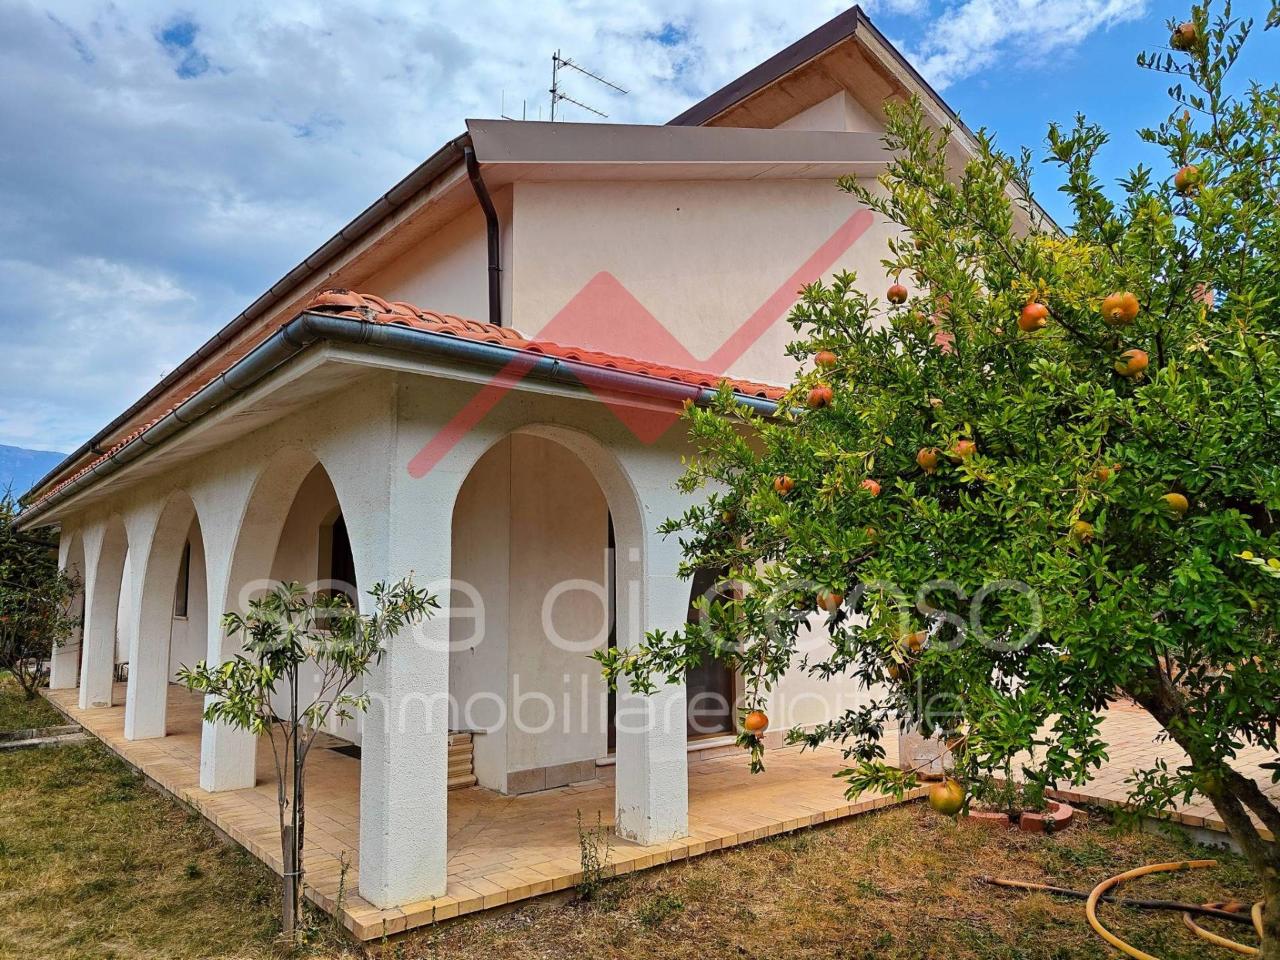 Villa in vendita a Raiano